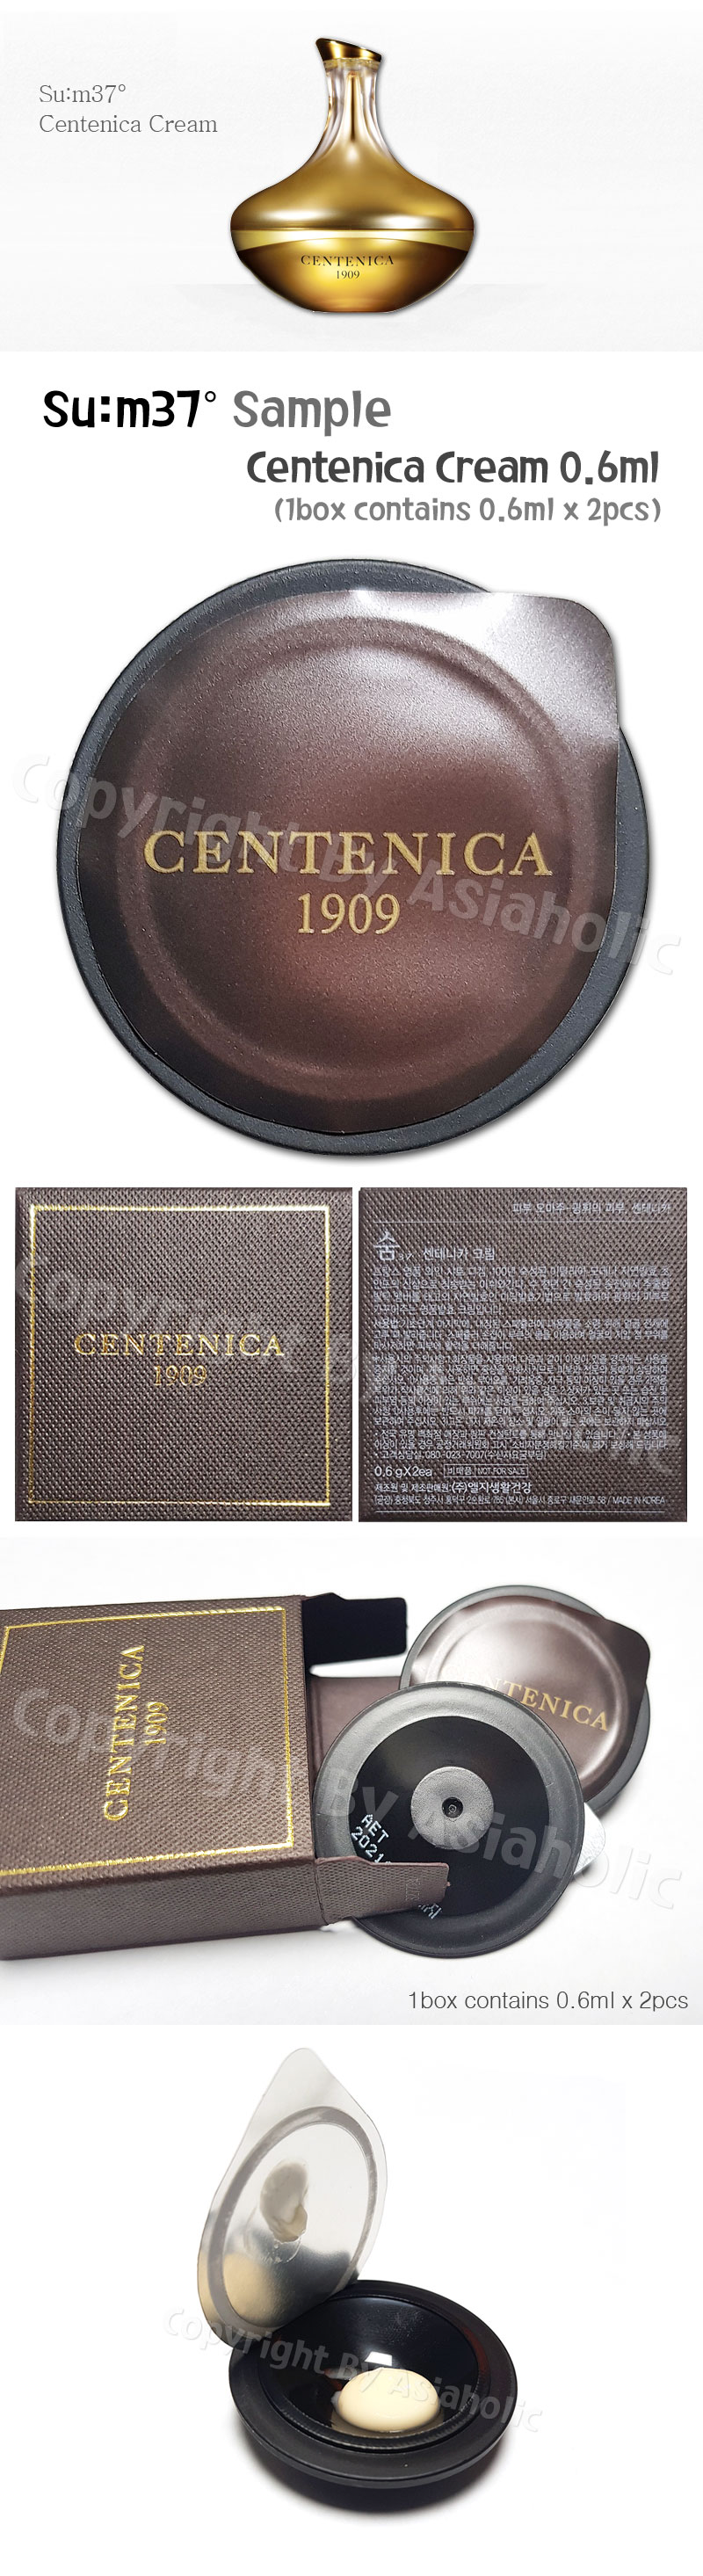 SU:M37 Centenica Cream 0.6ml x 6pcs (3Box) Premium Sample Sum37 Newest Version